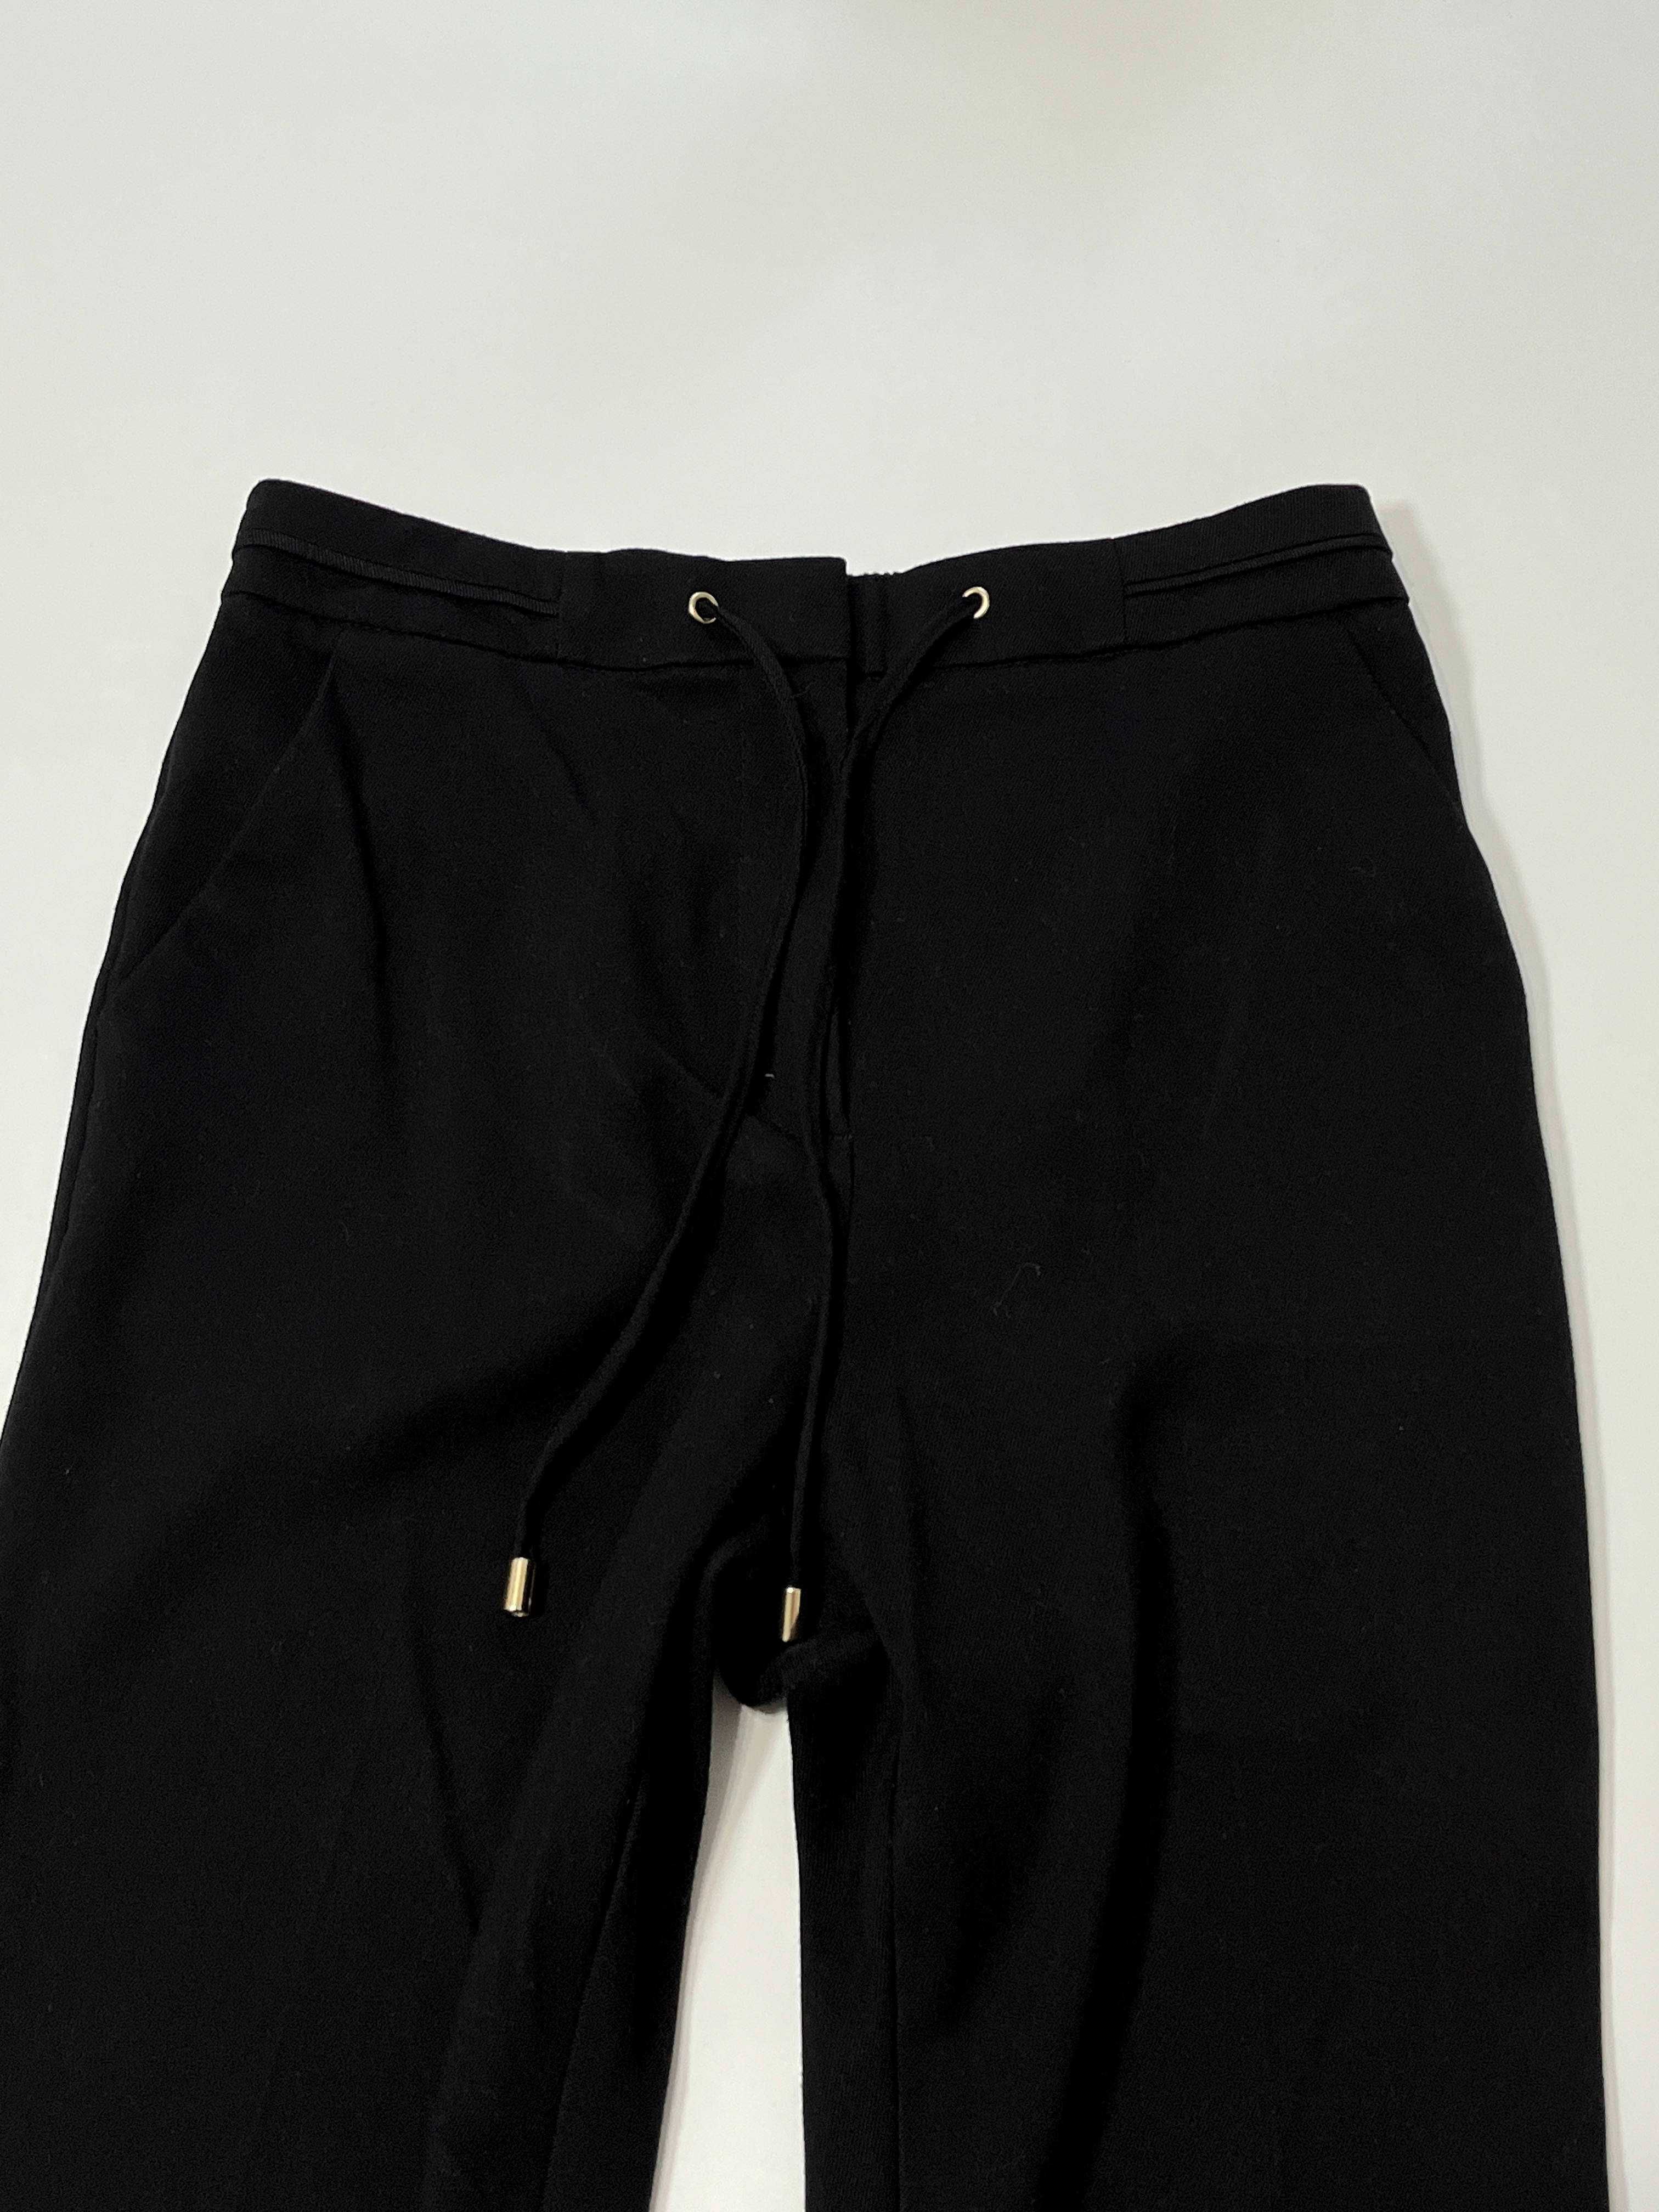 Czarne luzne spodnie męskie L unisex